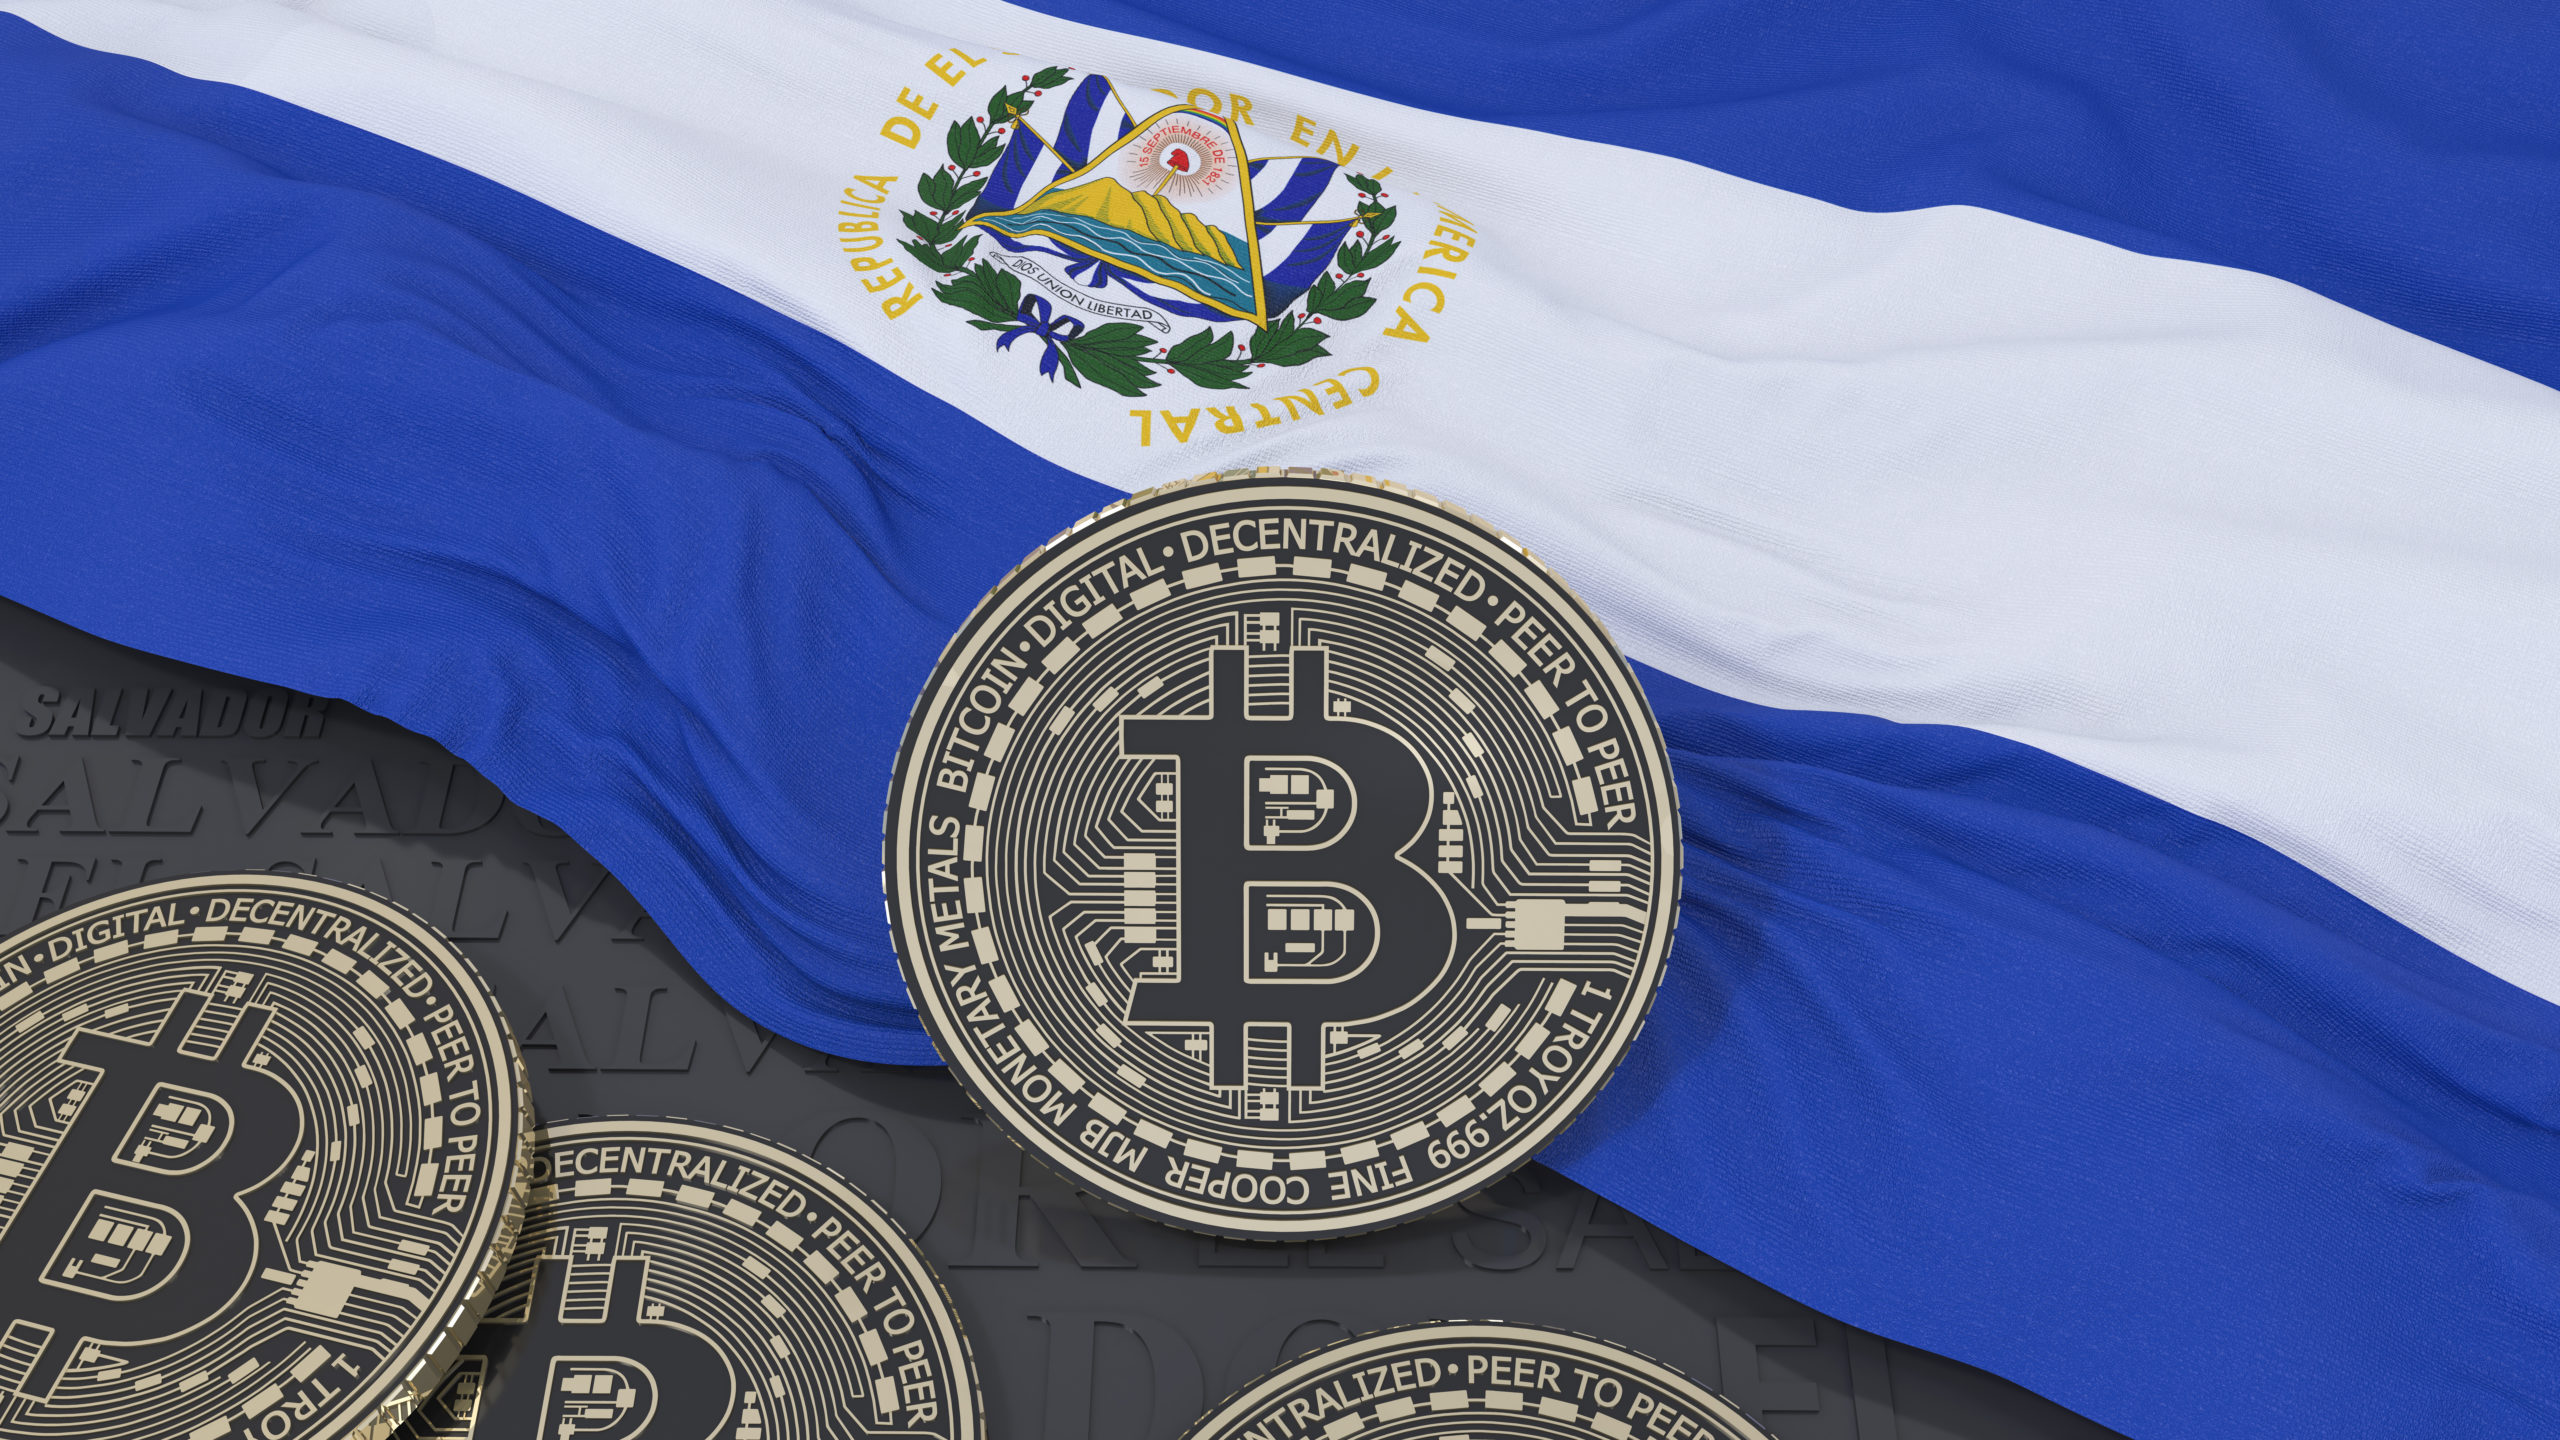 El Salvador était une cause d'incrédulité lorsqu'il a décidé d'adopter le Bitcoin comme monnaie fiduciaire, déclare le président du pays - La Crypto Monnaie